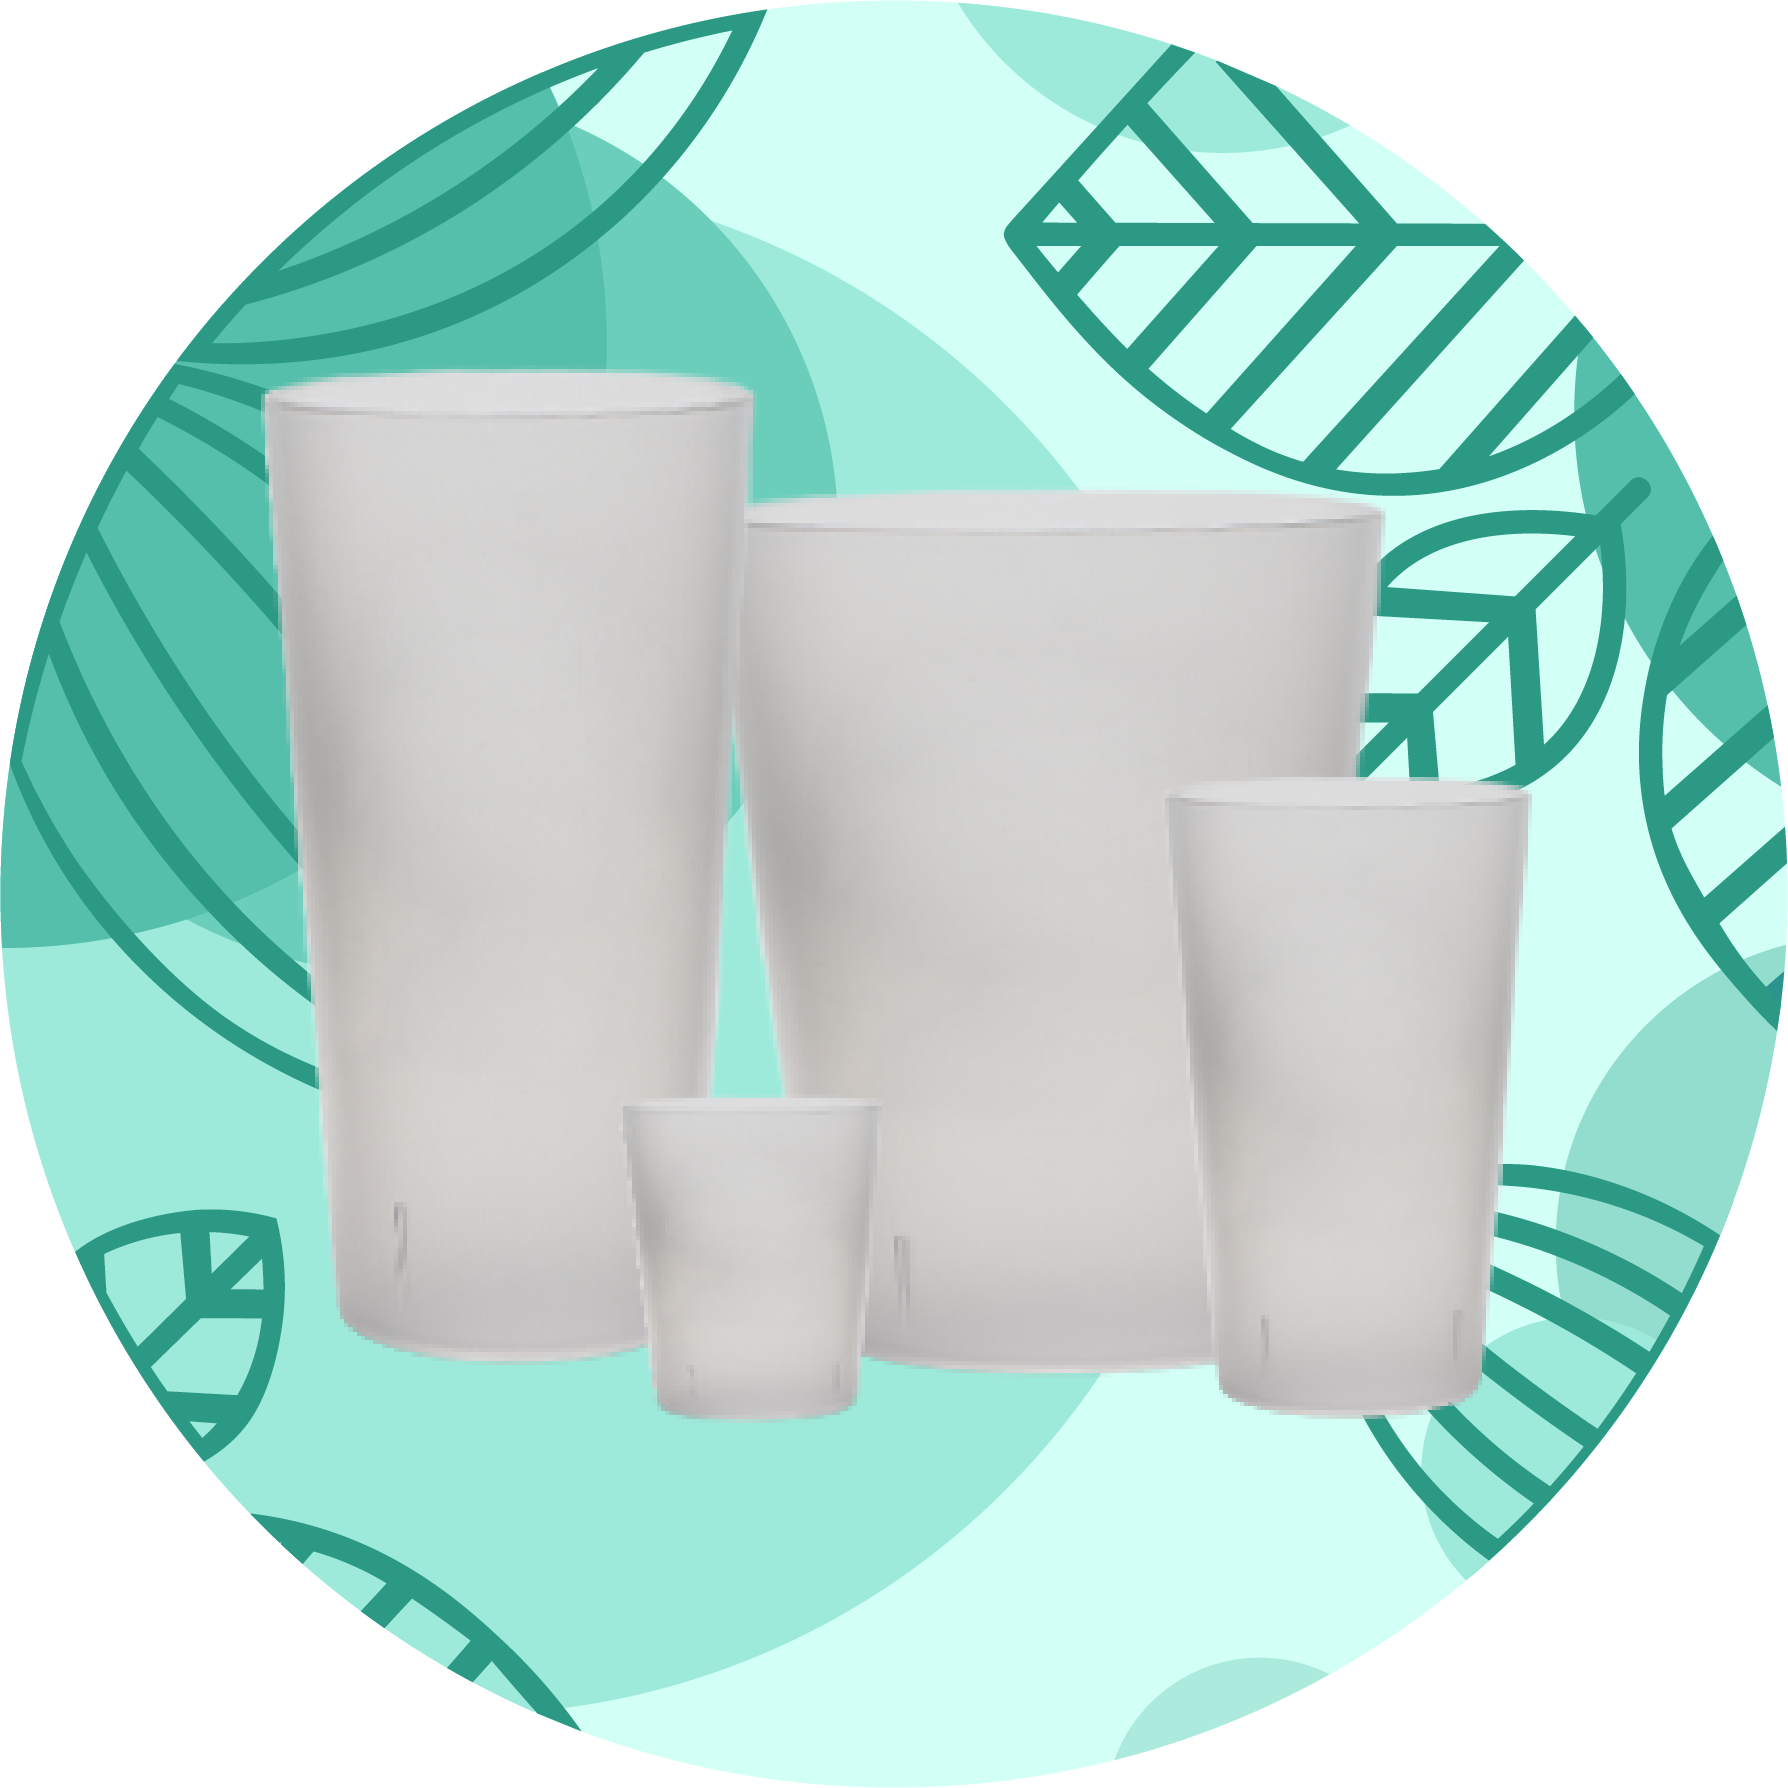 Gobelet r%C3%A9utilisable %C3%A9cologique - Customized reusable cup for association